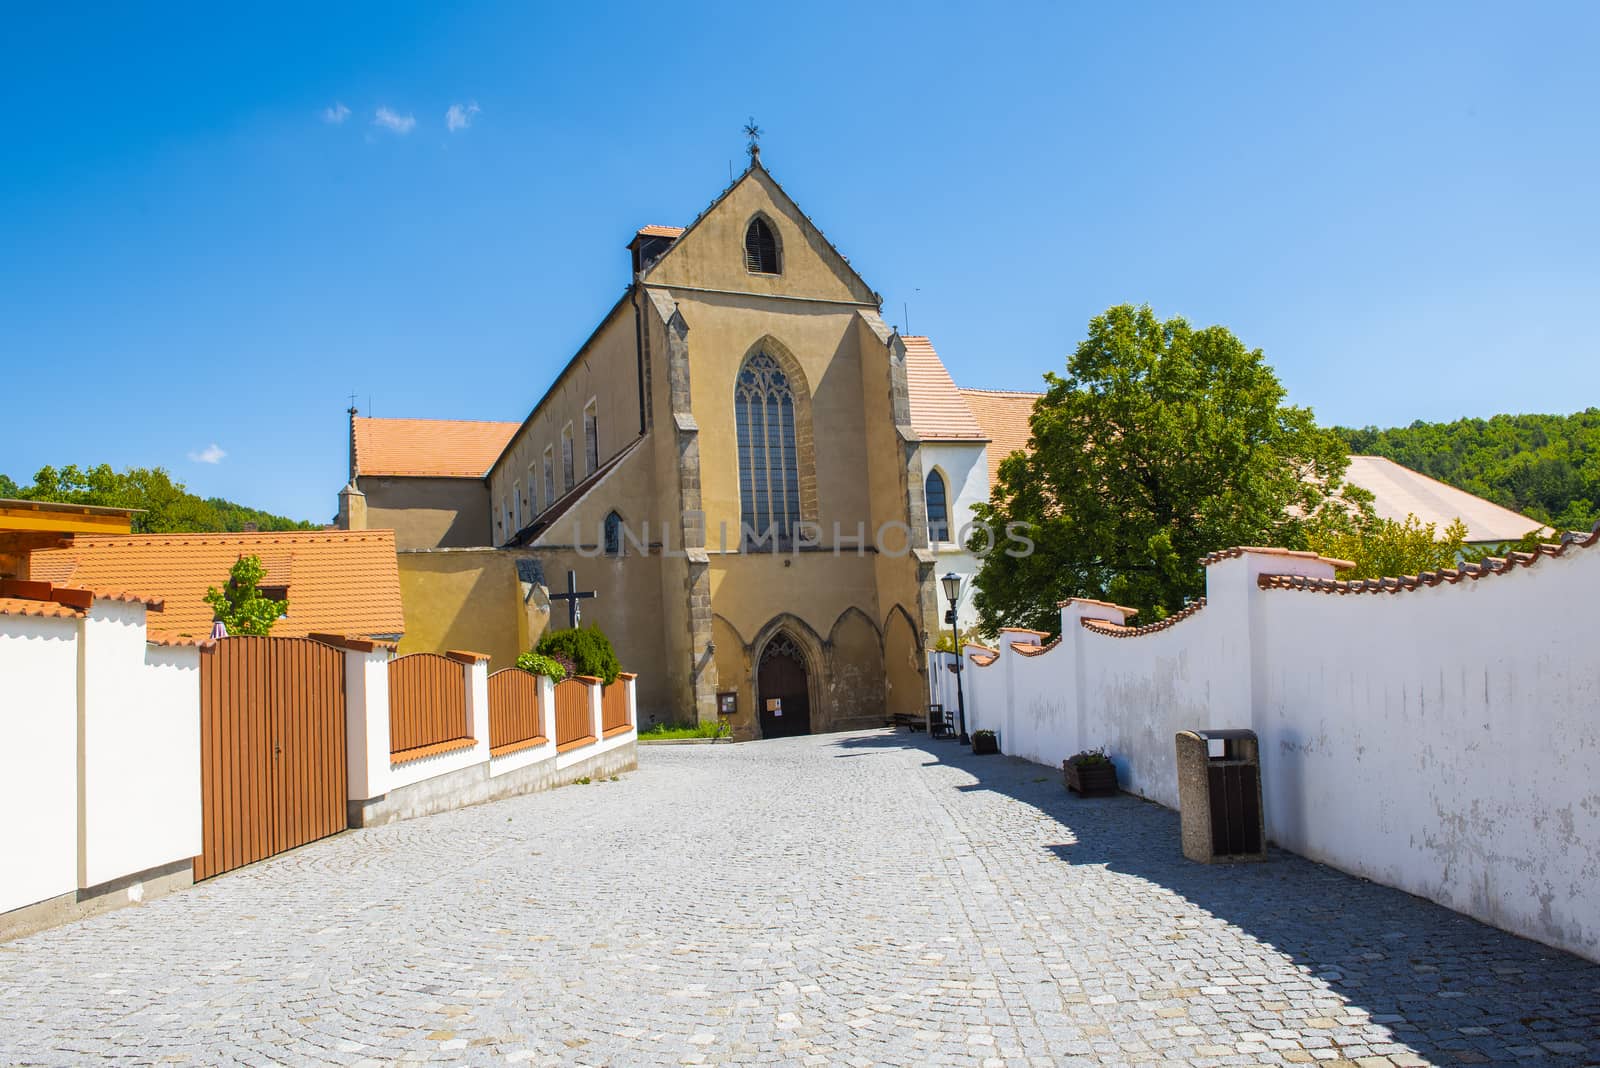 Zlata Koruna Monastery in the Southern Czech Republic by fyletto